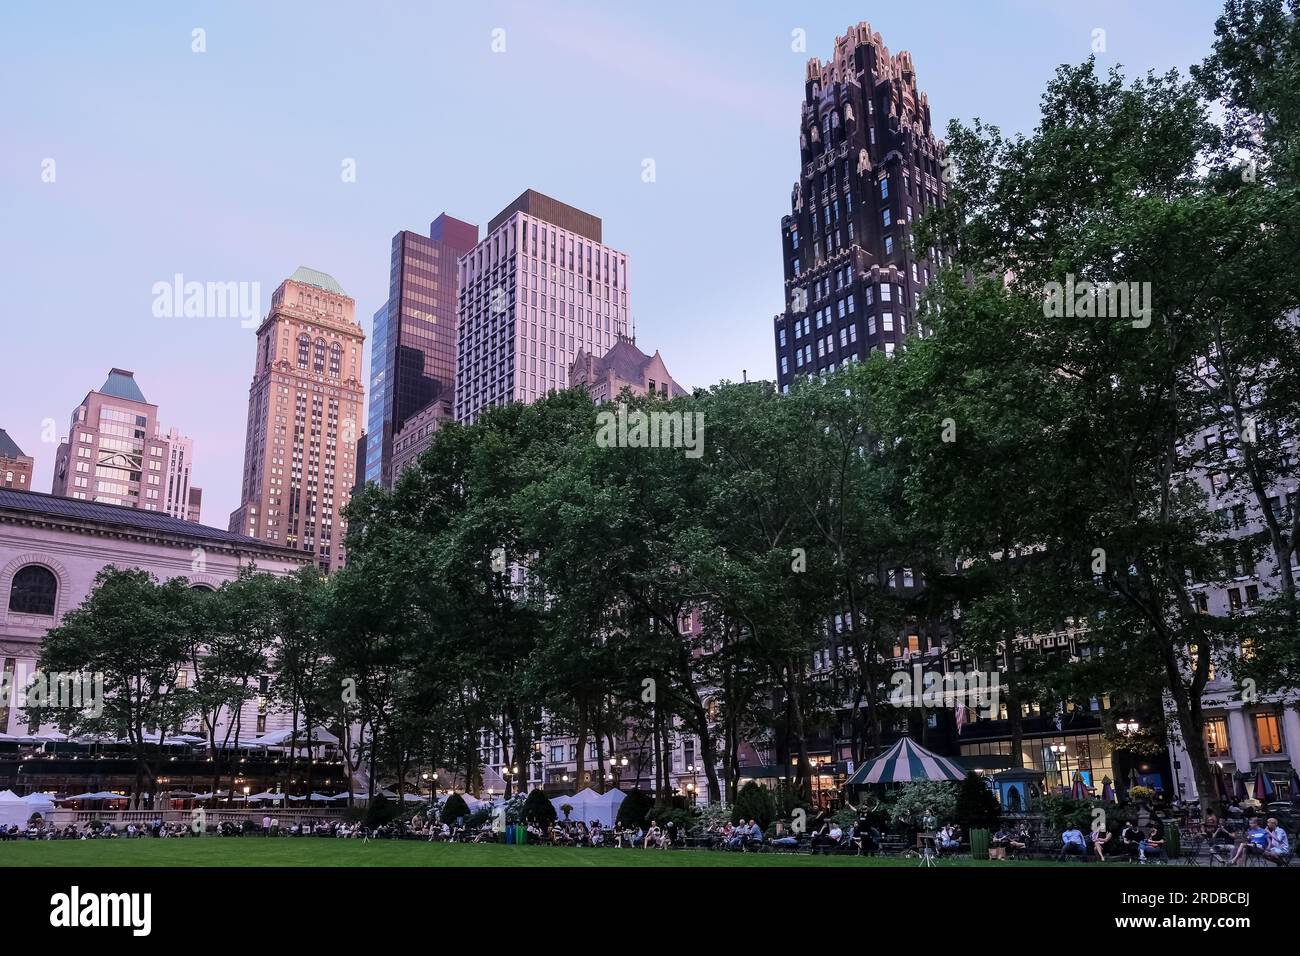 Detalle arquitectónico de Bryant Park, un parque público ubicado en el barrio de Manhattan en la ciudad de Nueva York. Foto de stock